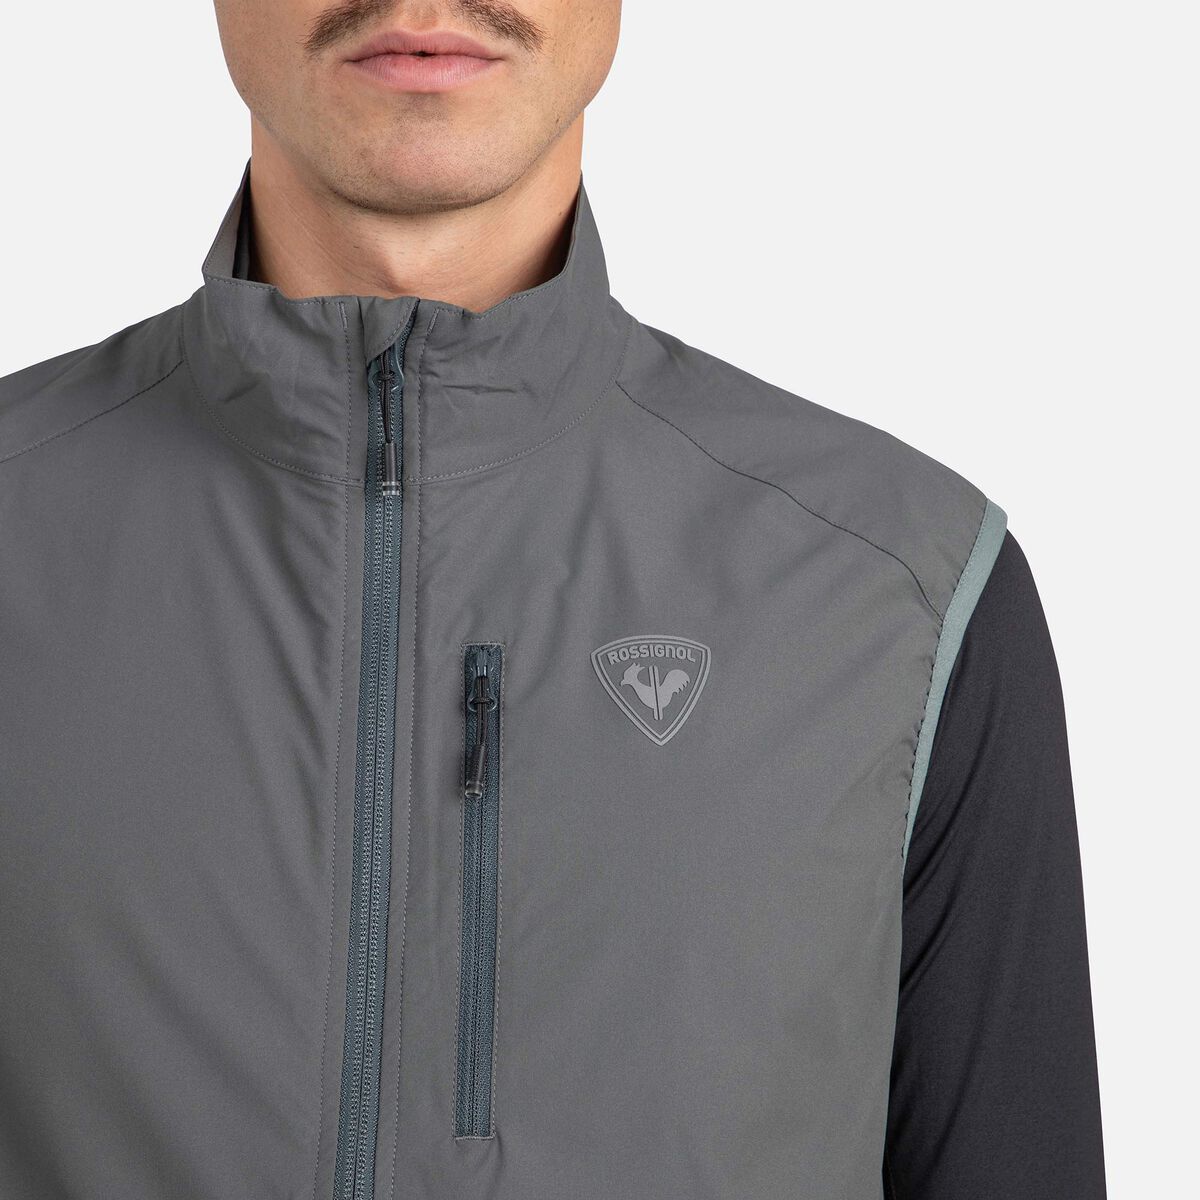 Rossignol Men's Active Versatile XC Ski Vest grey